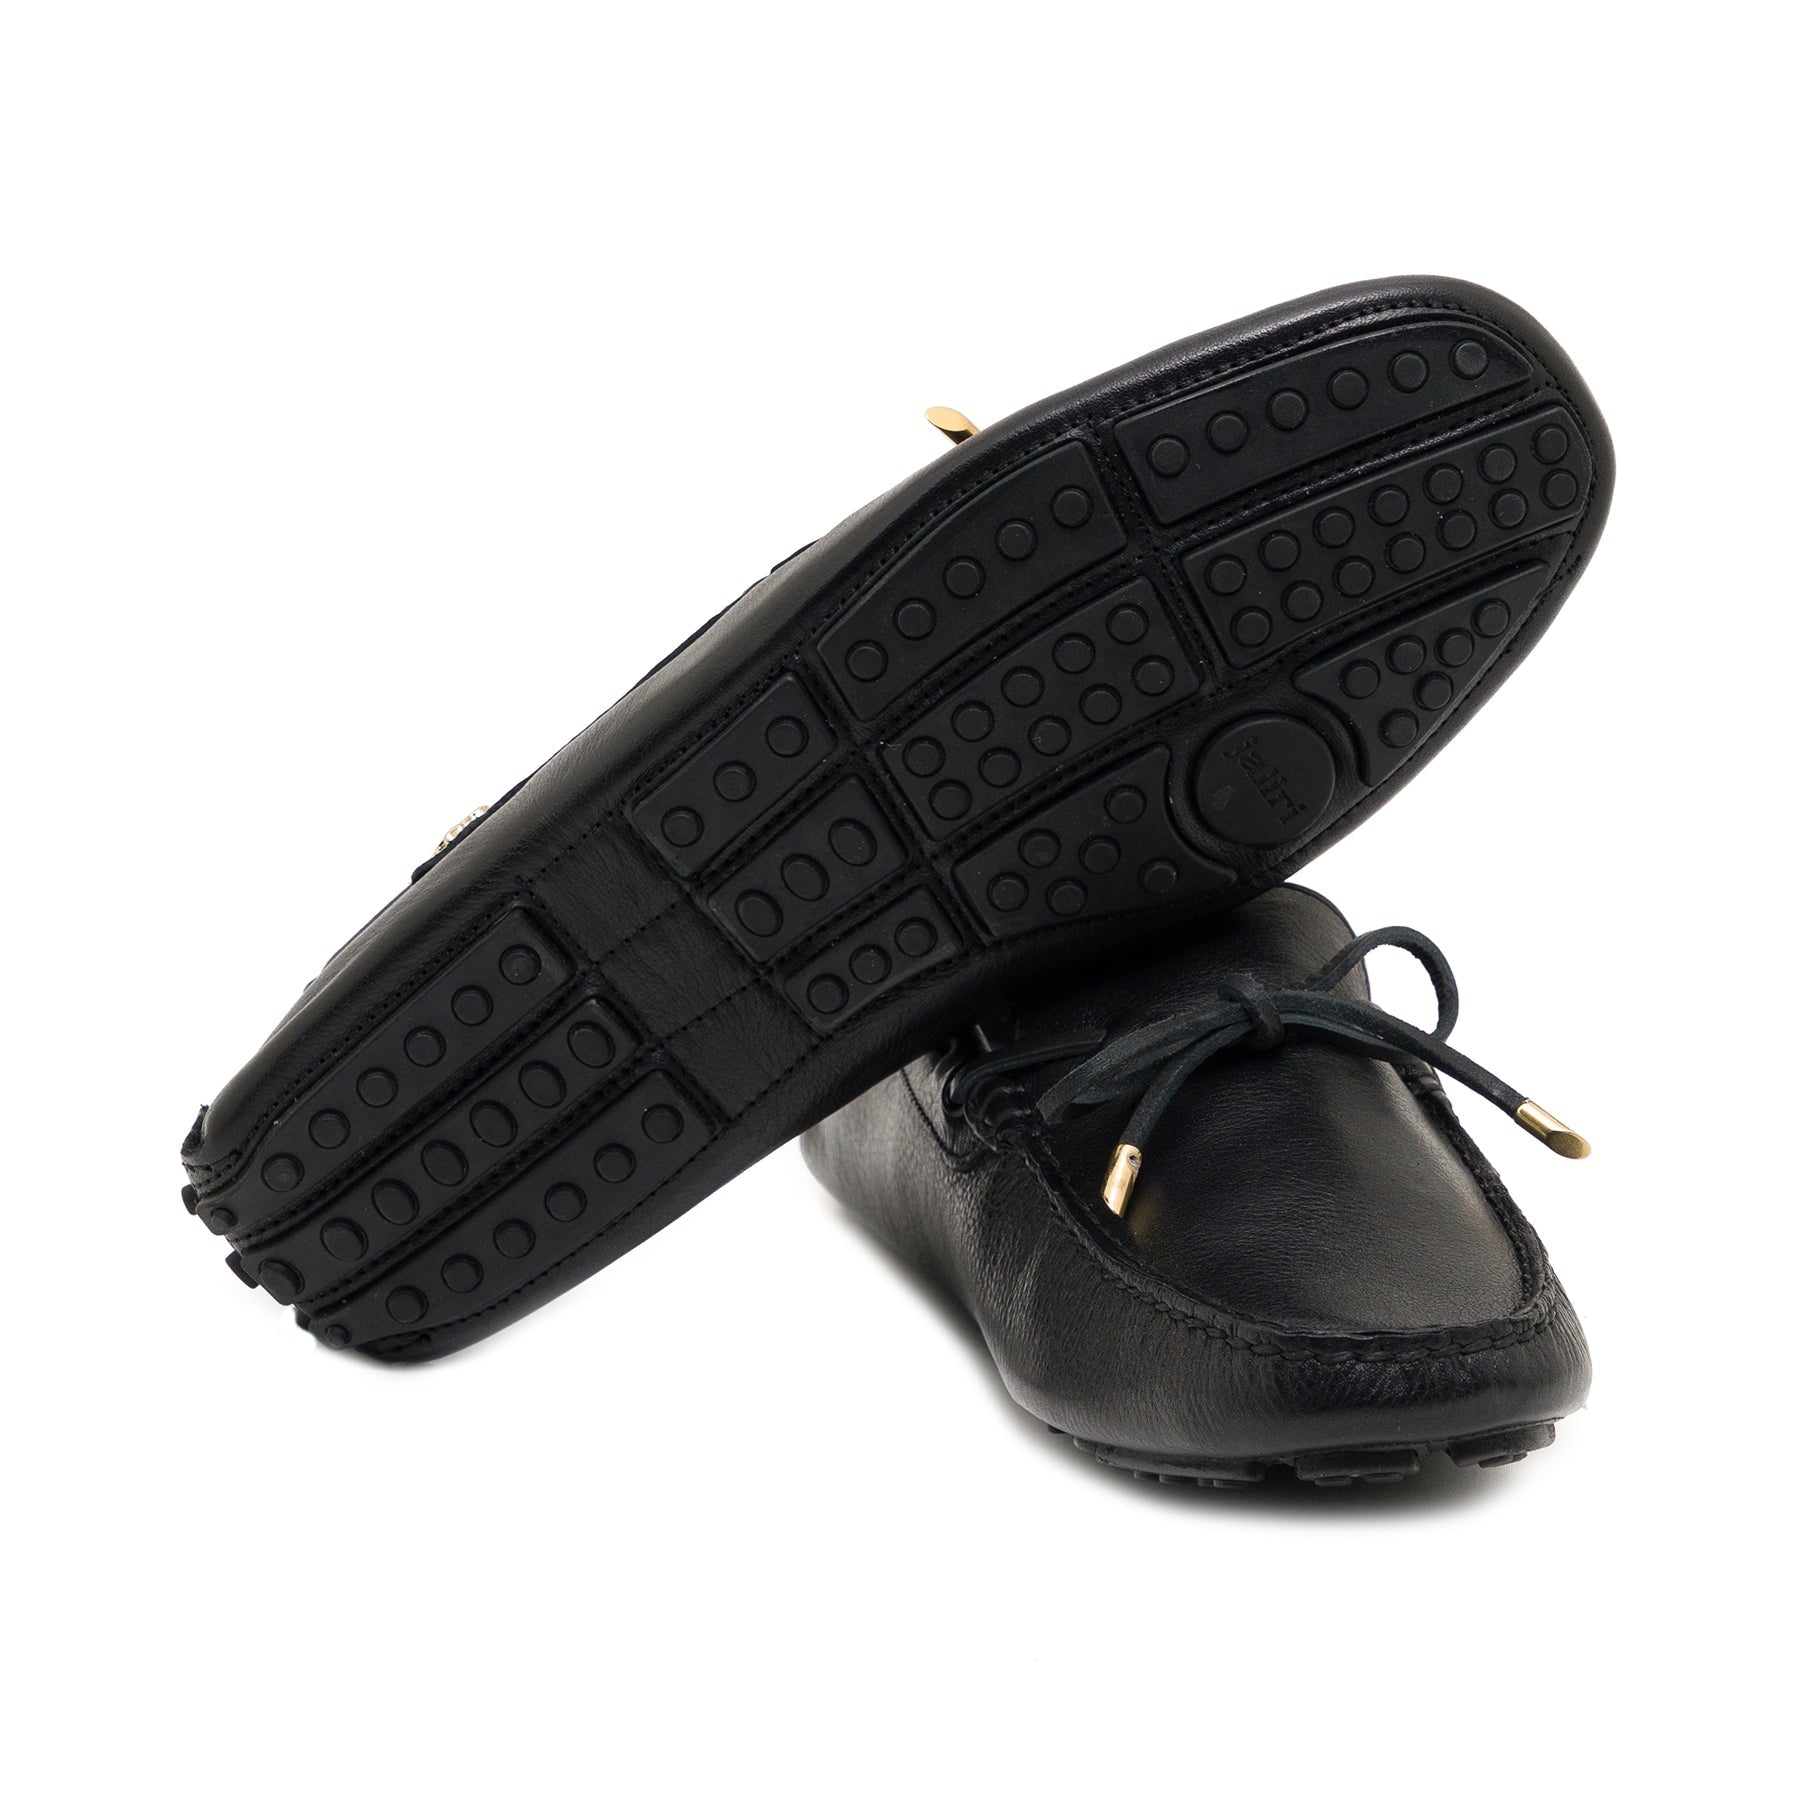 Modena Black Loafer